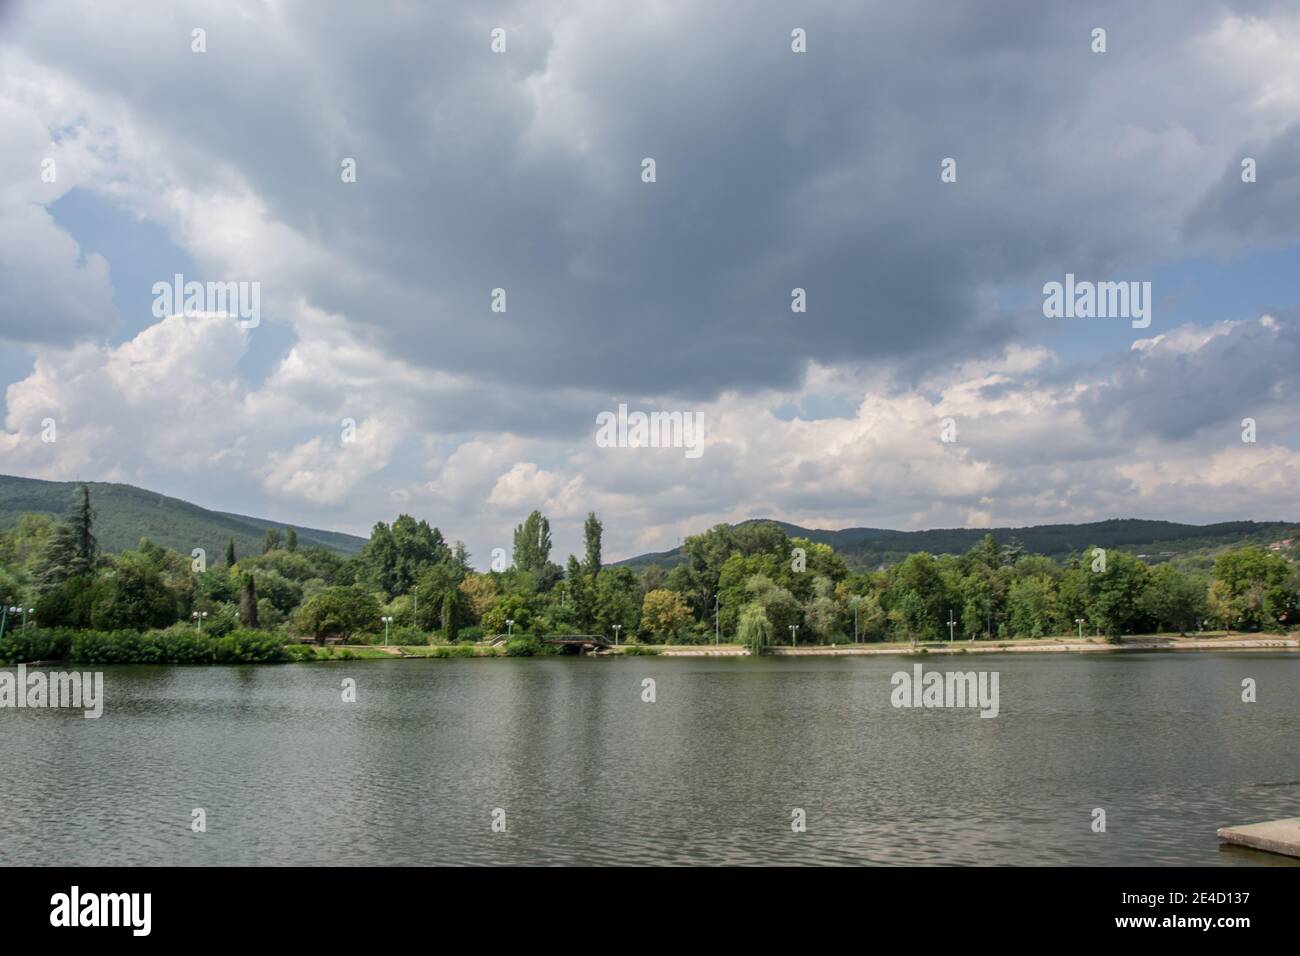 Schöne friedliche Natur, Bäume und Pflanzen auf einem See, Park, Sommersaison, Reflexion im Wasser, Zagorka See, Stara Zagora, Bulgarien Stockfoto